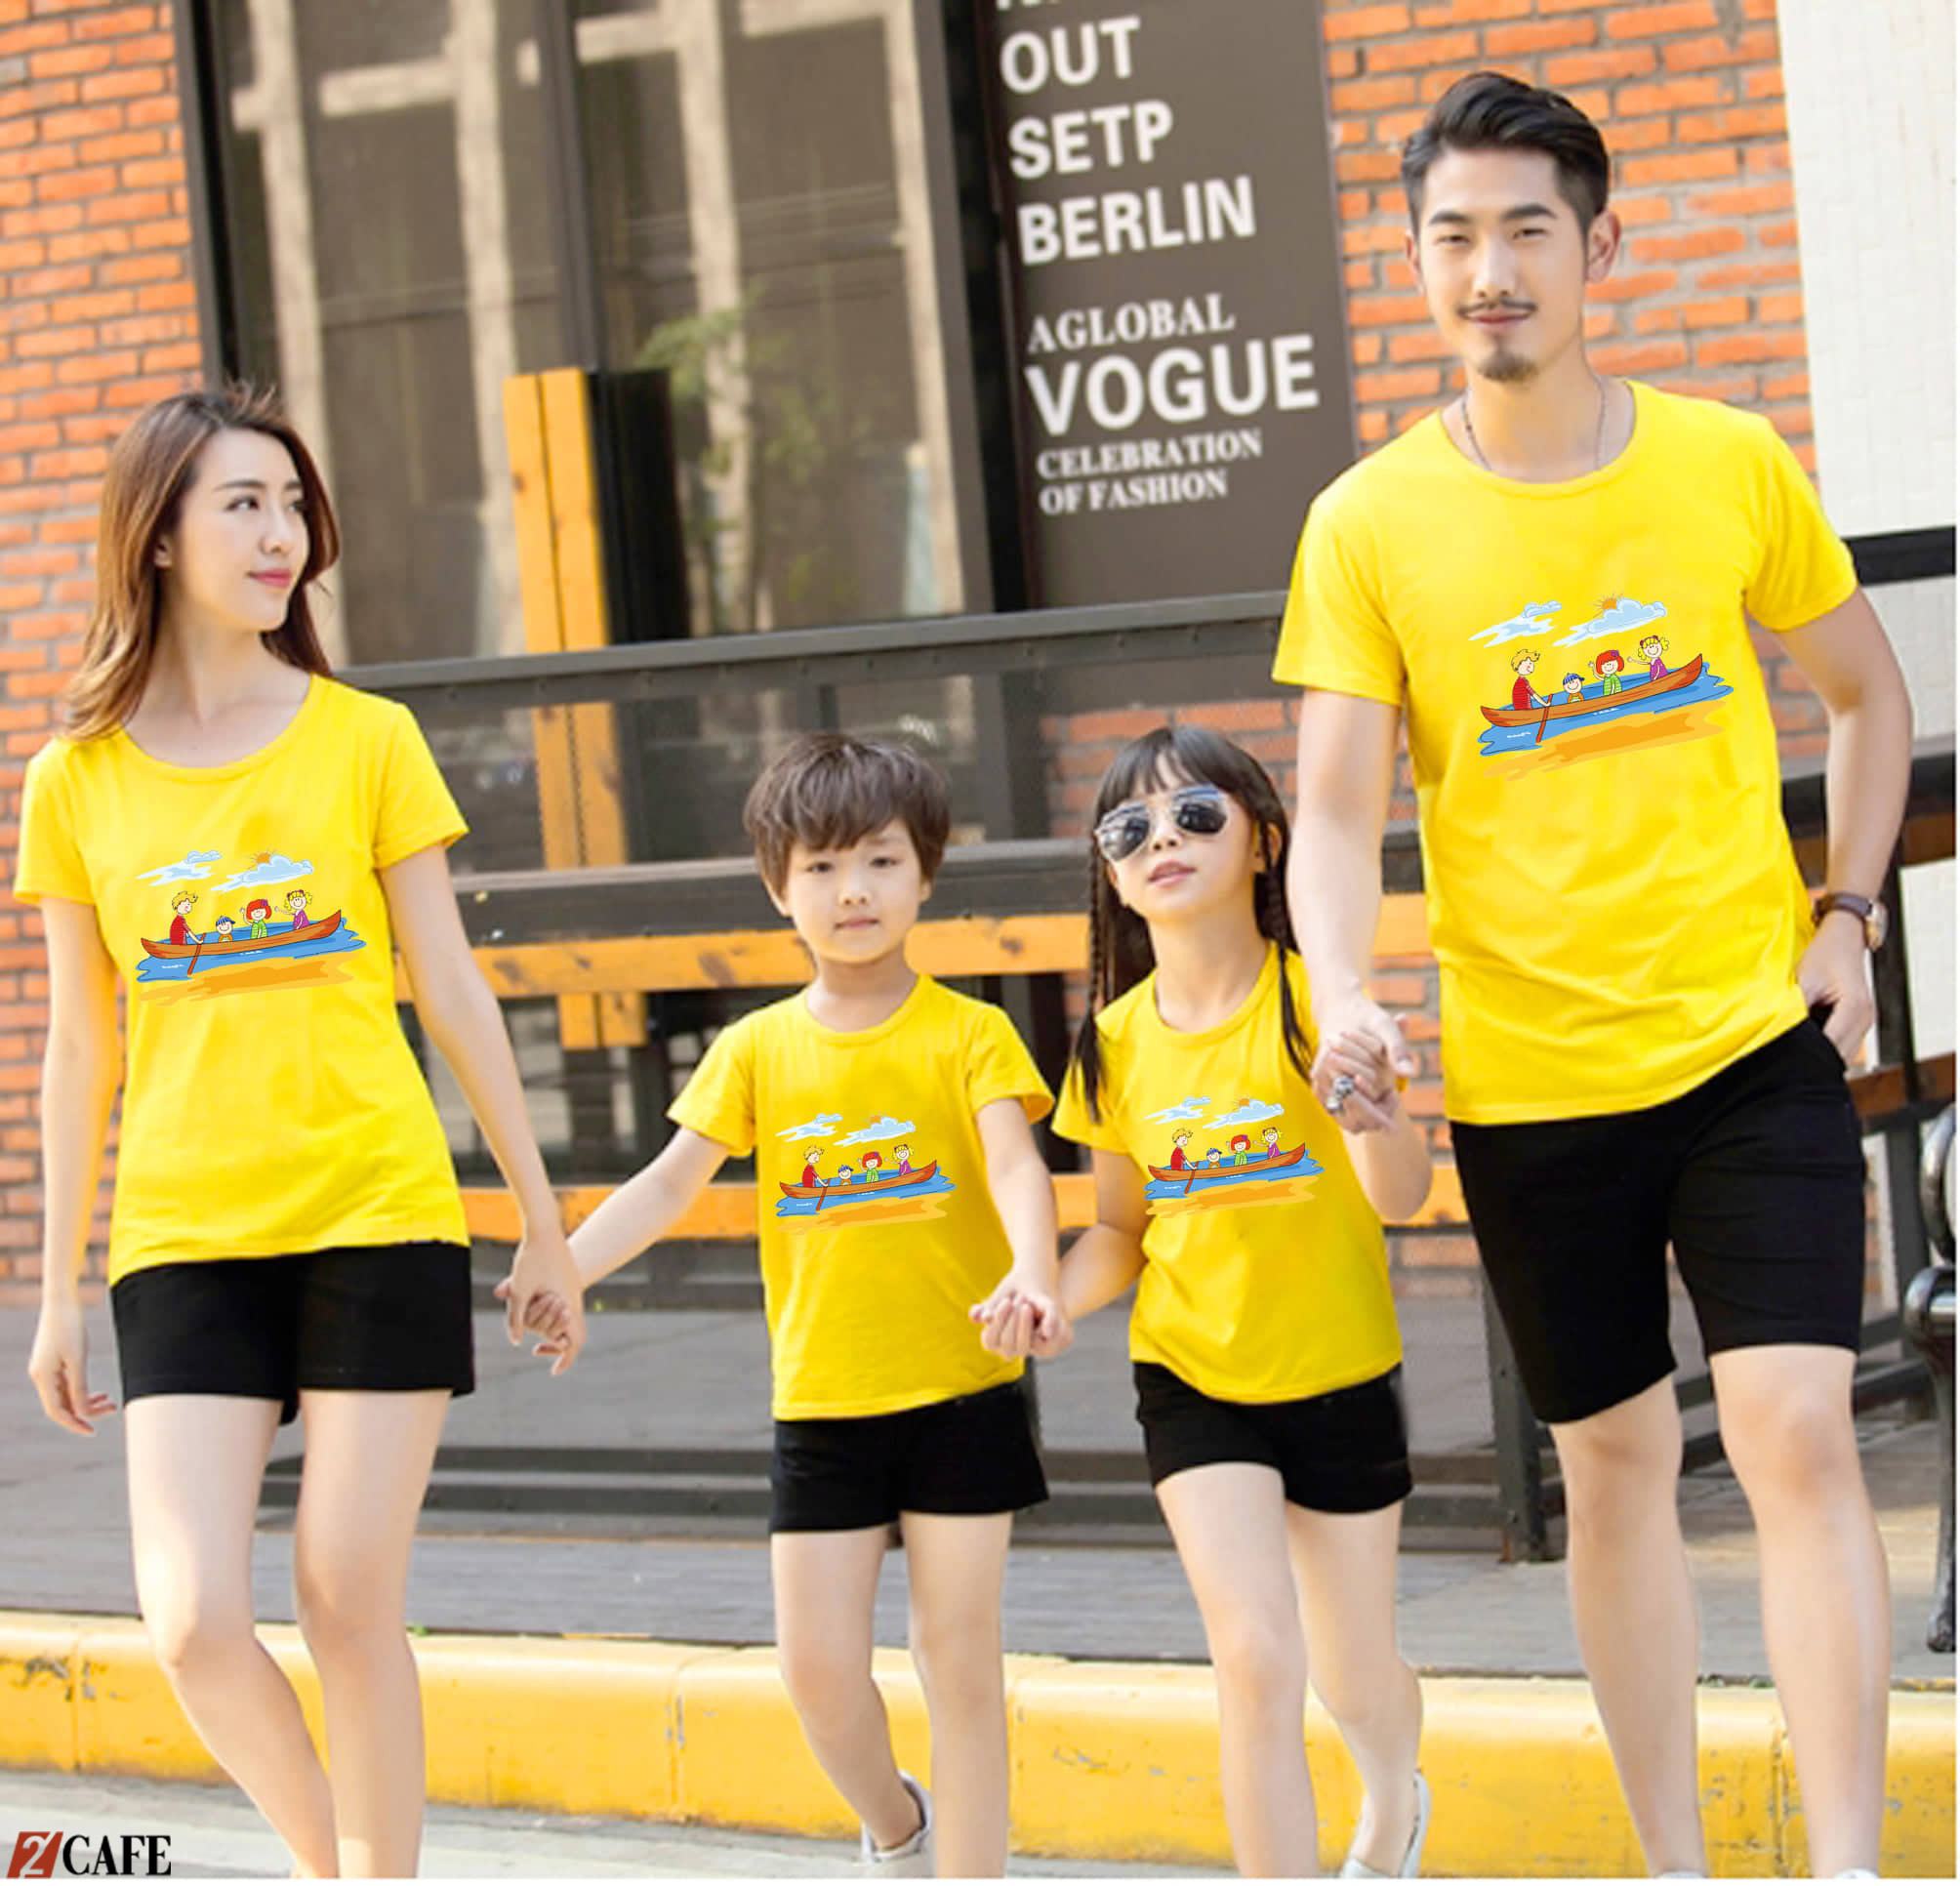 Đồng phục gia đình áo phông cổ tròn màu vàng kết hợp cùng quần short đen năng động cho mùa hè (Ảnh: Internet) 